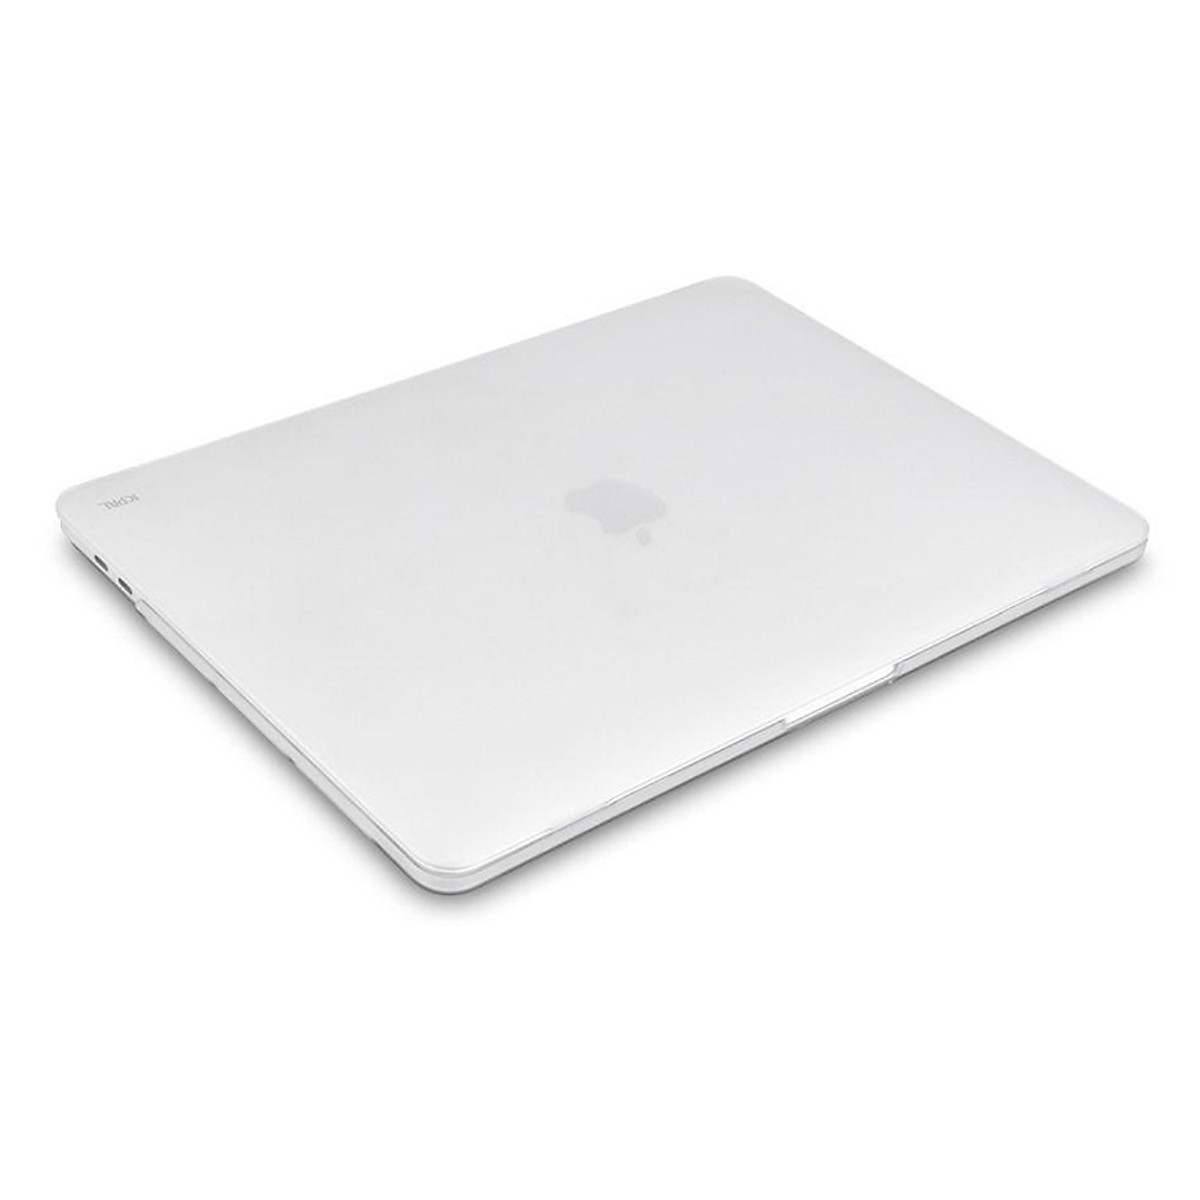 Ốp Lưng JCPAL Cho Macbook 13” New Pro Touchbar/ No touchbar (A1706 - A1708) - Hàng chính hãng